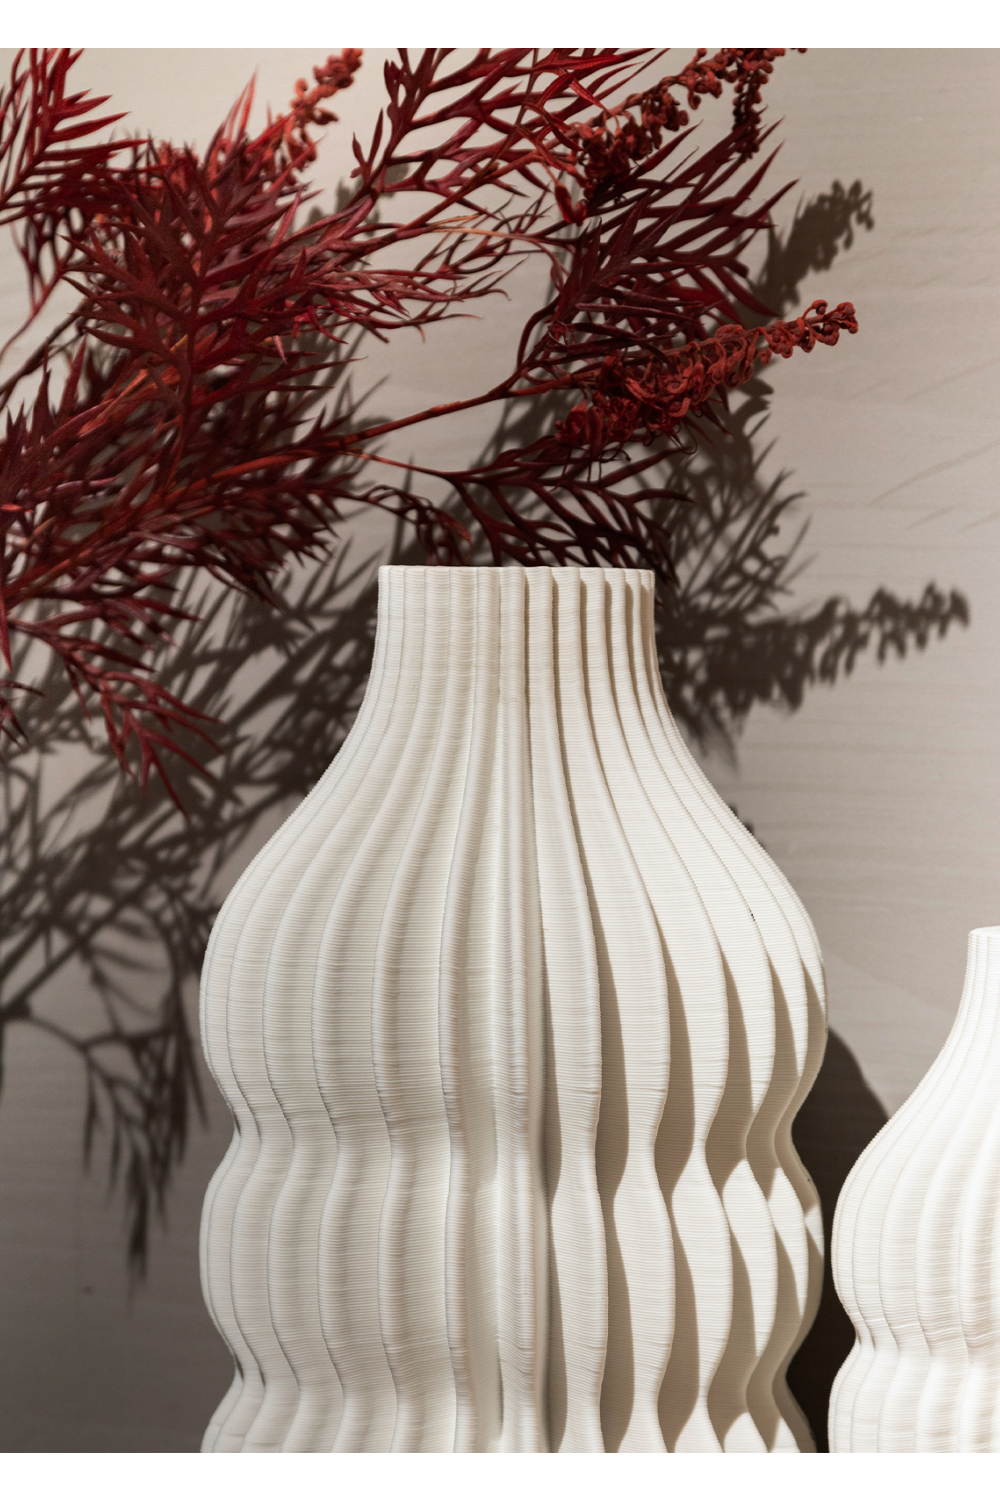 White Ceramic Fluted Vase | Liang & Eimil Iverna | Oroa.com